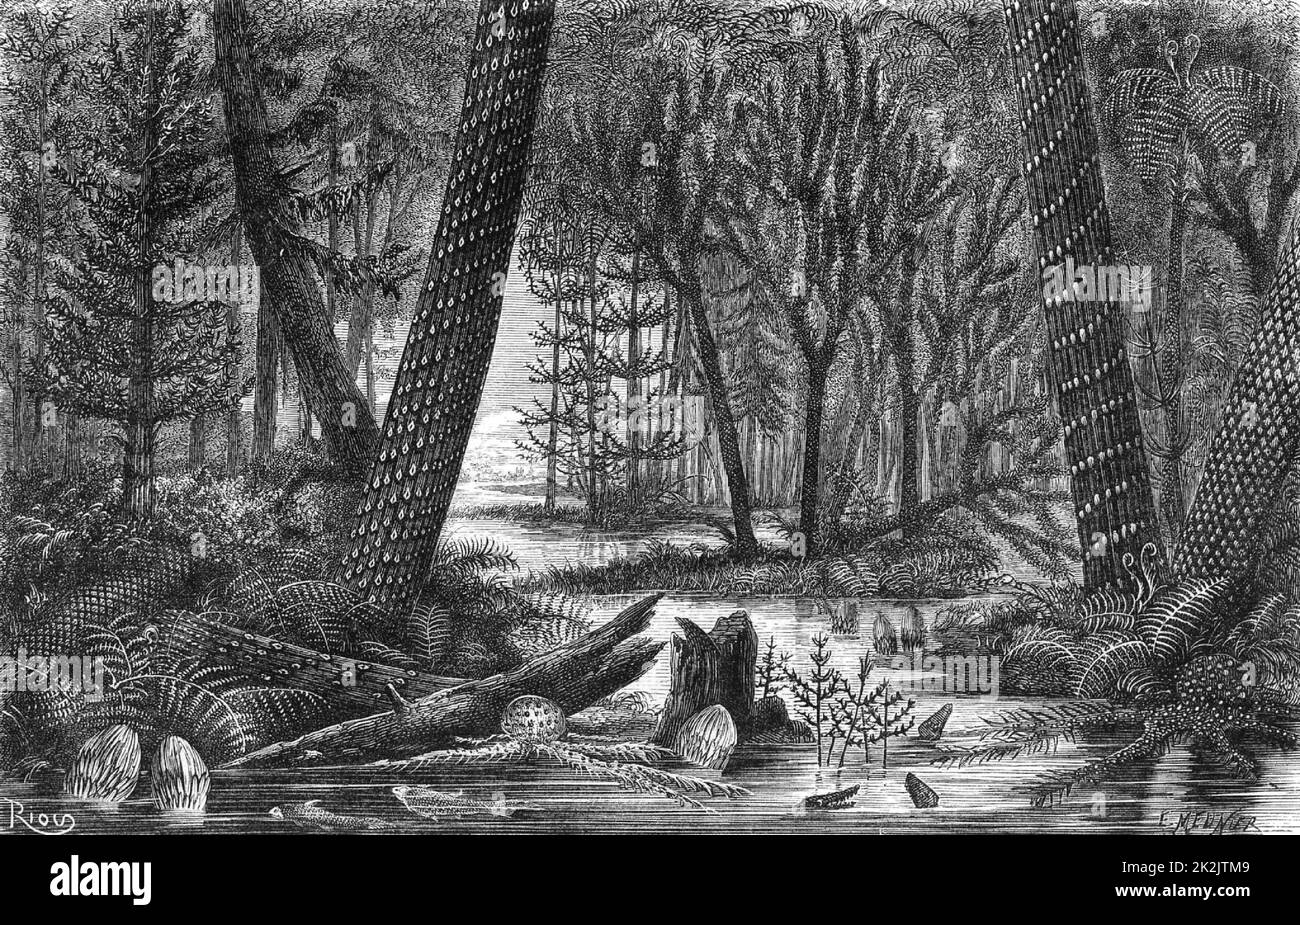 Ricostruzione di una foresta carbonifera da parte dell'artista durante il periodo in cui venivano deposti i depositi carboniferi. Da 'The Universe' di fa Pouchet (Londra, 1874). Incisione. Geologia. Paleontologia. Foto Stock